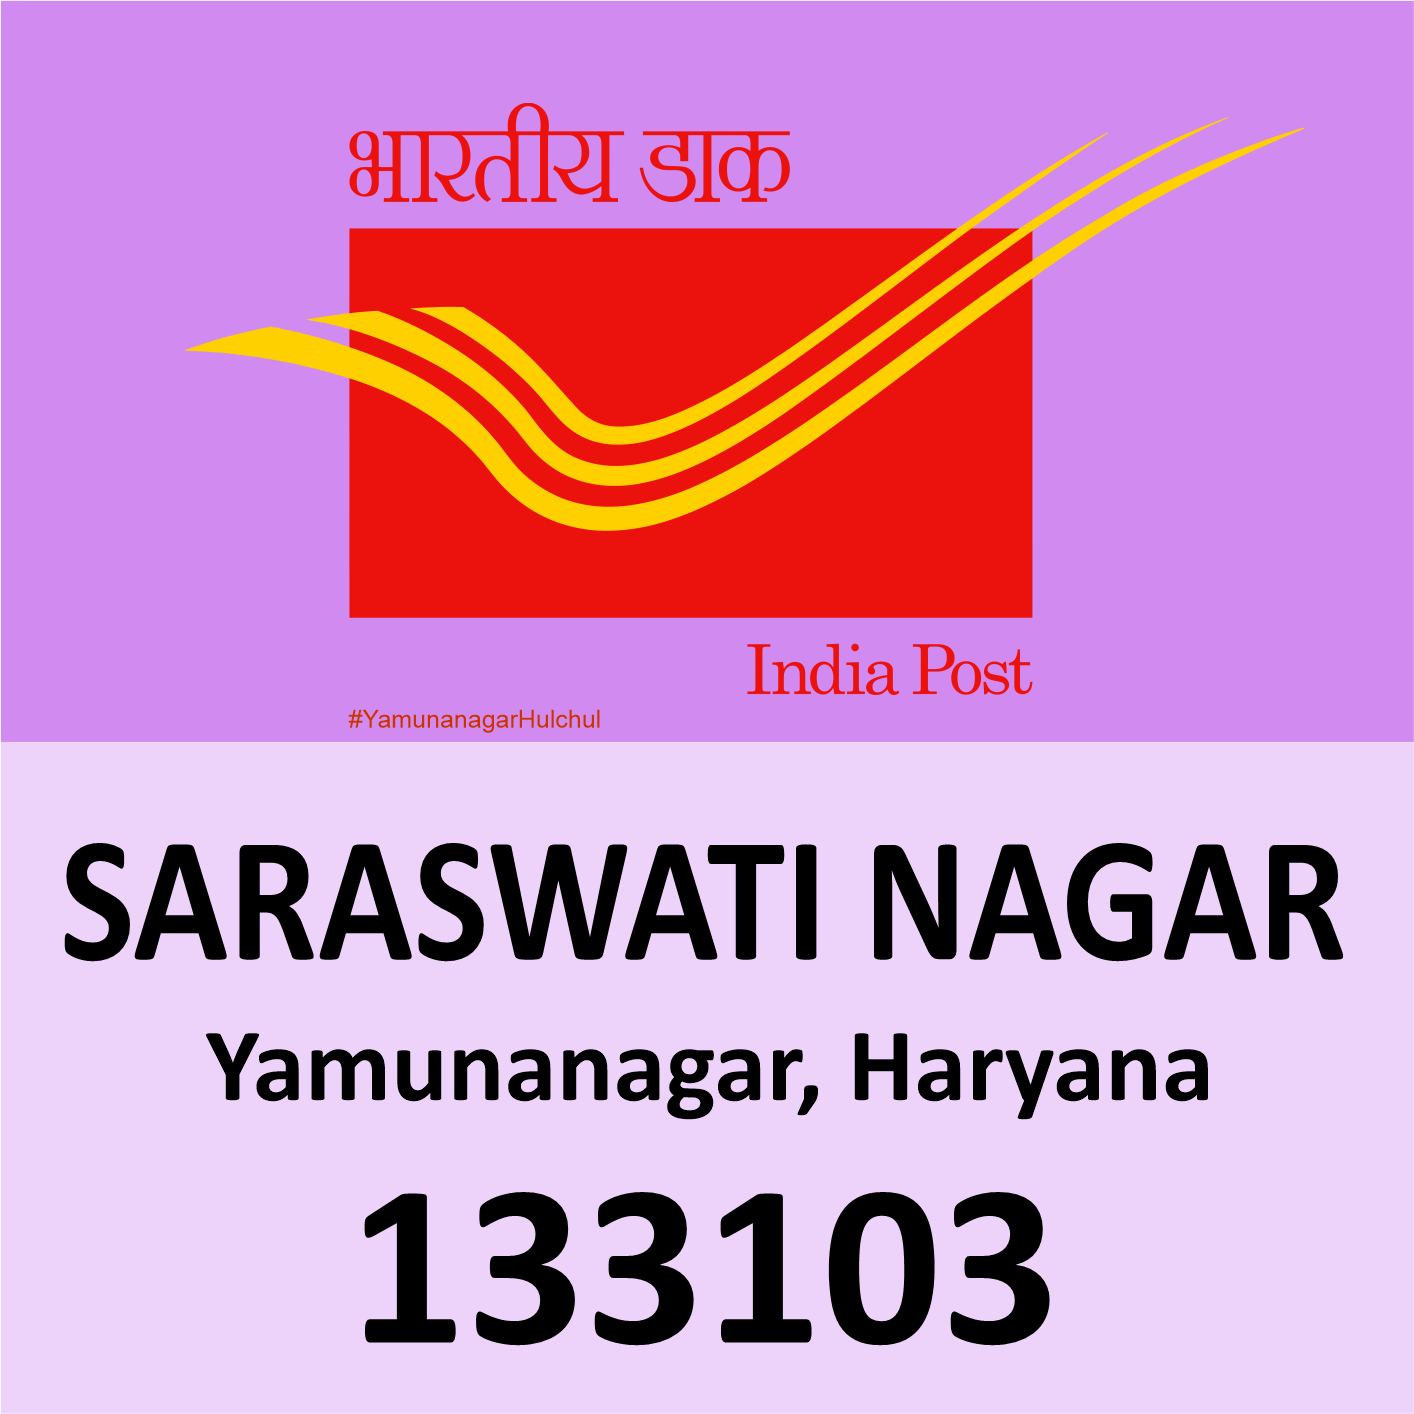 Pin Code of Saraswati Nagar, Yamunanagar is 133103, #YamunanagarHulchul, #यमुनानगरहलचल, #PanditKhabri, Pandit Khabri, Pin Code of Yamunanagar, Haryana,